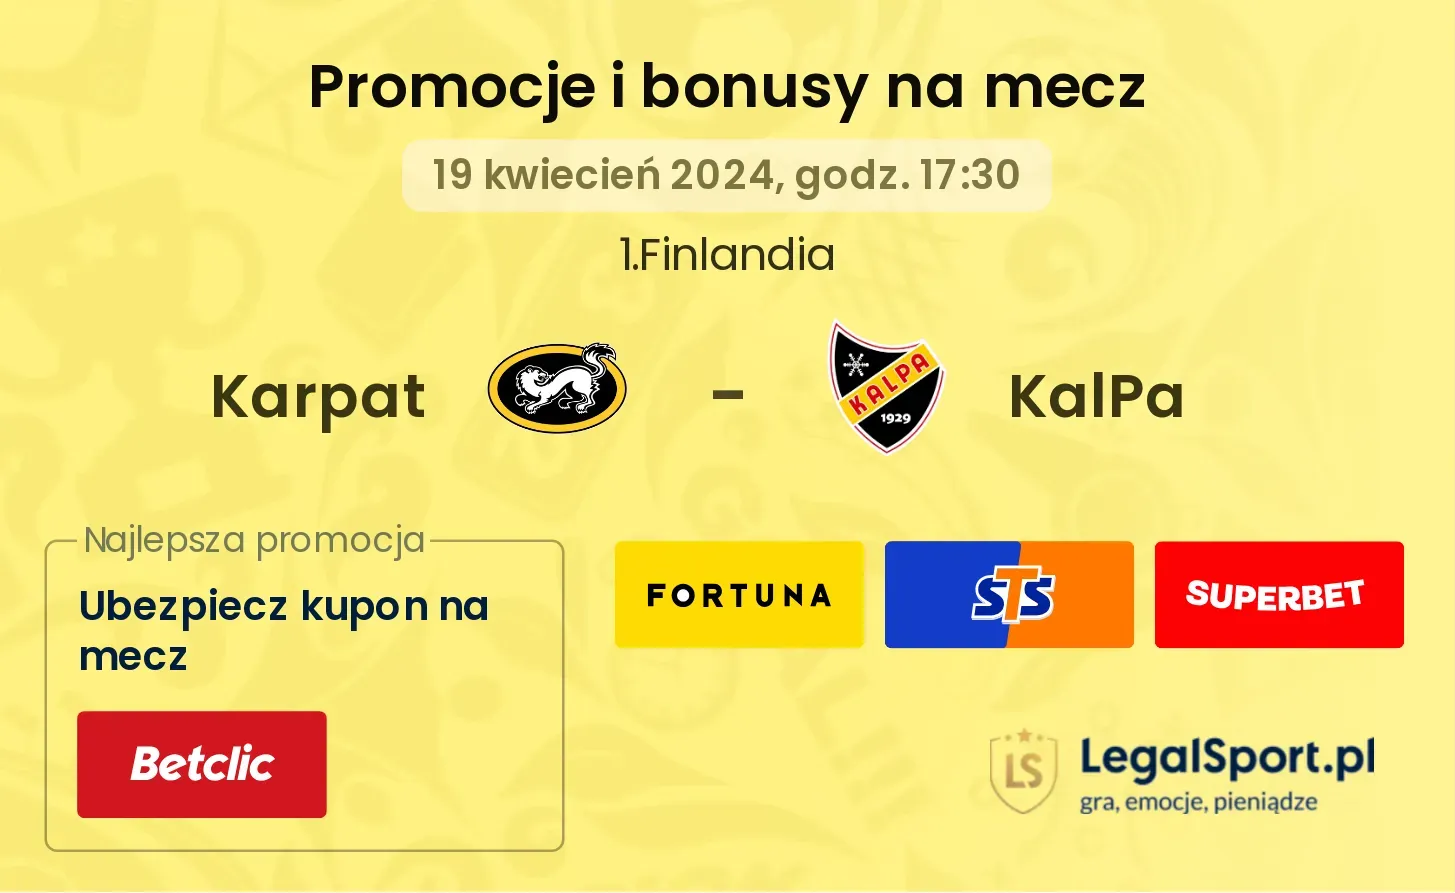 Karpat - KalPa promocje bonusy na mecz